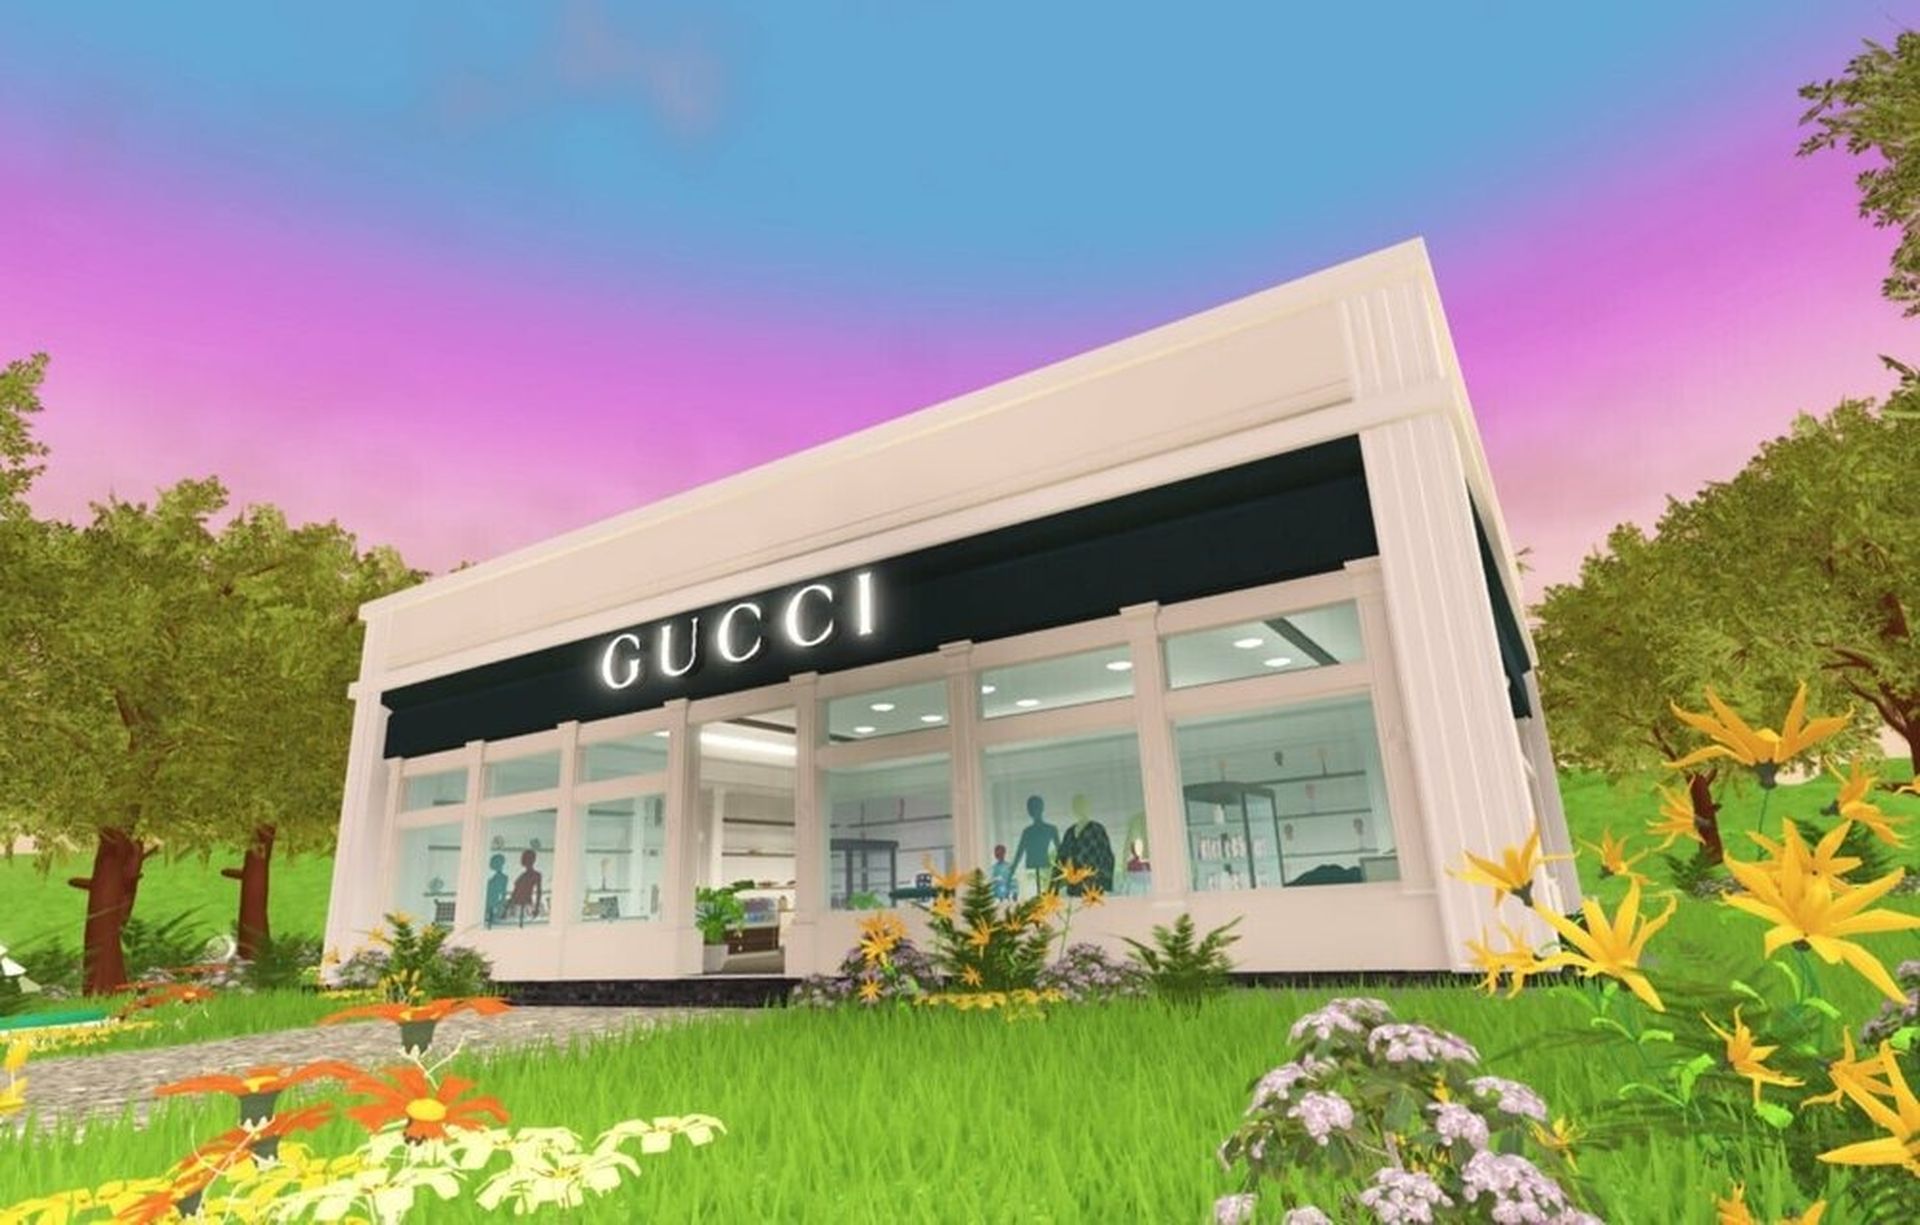 Gucci Town wird auf Roblox gestartet: Erhalten Sie kostenlose Artikel